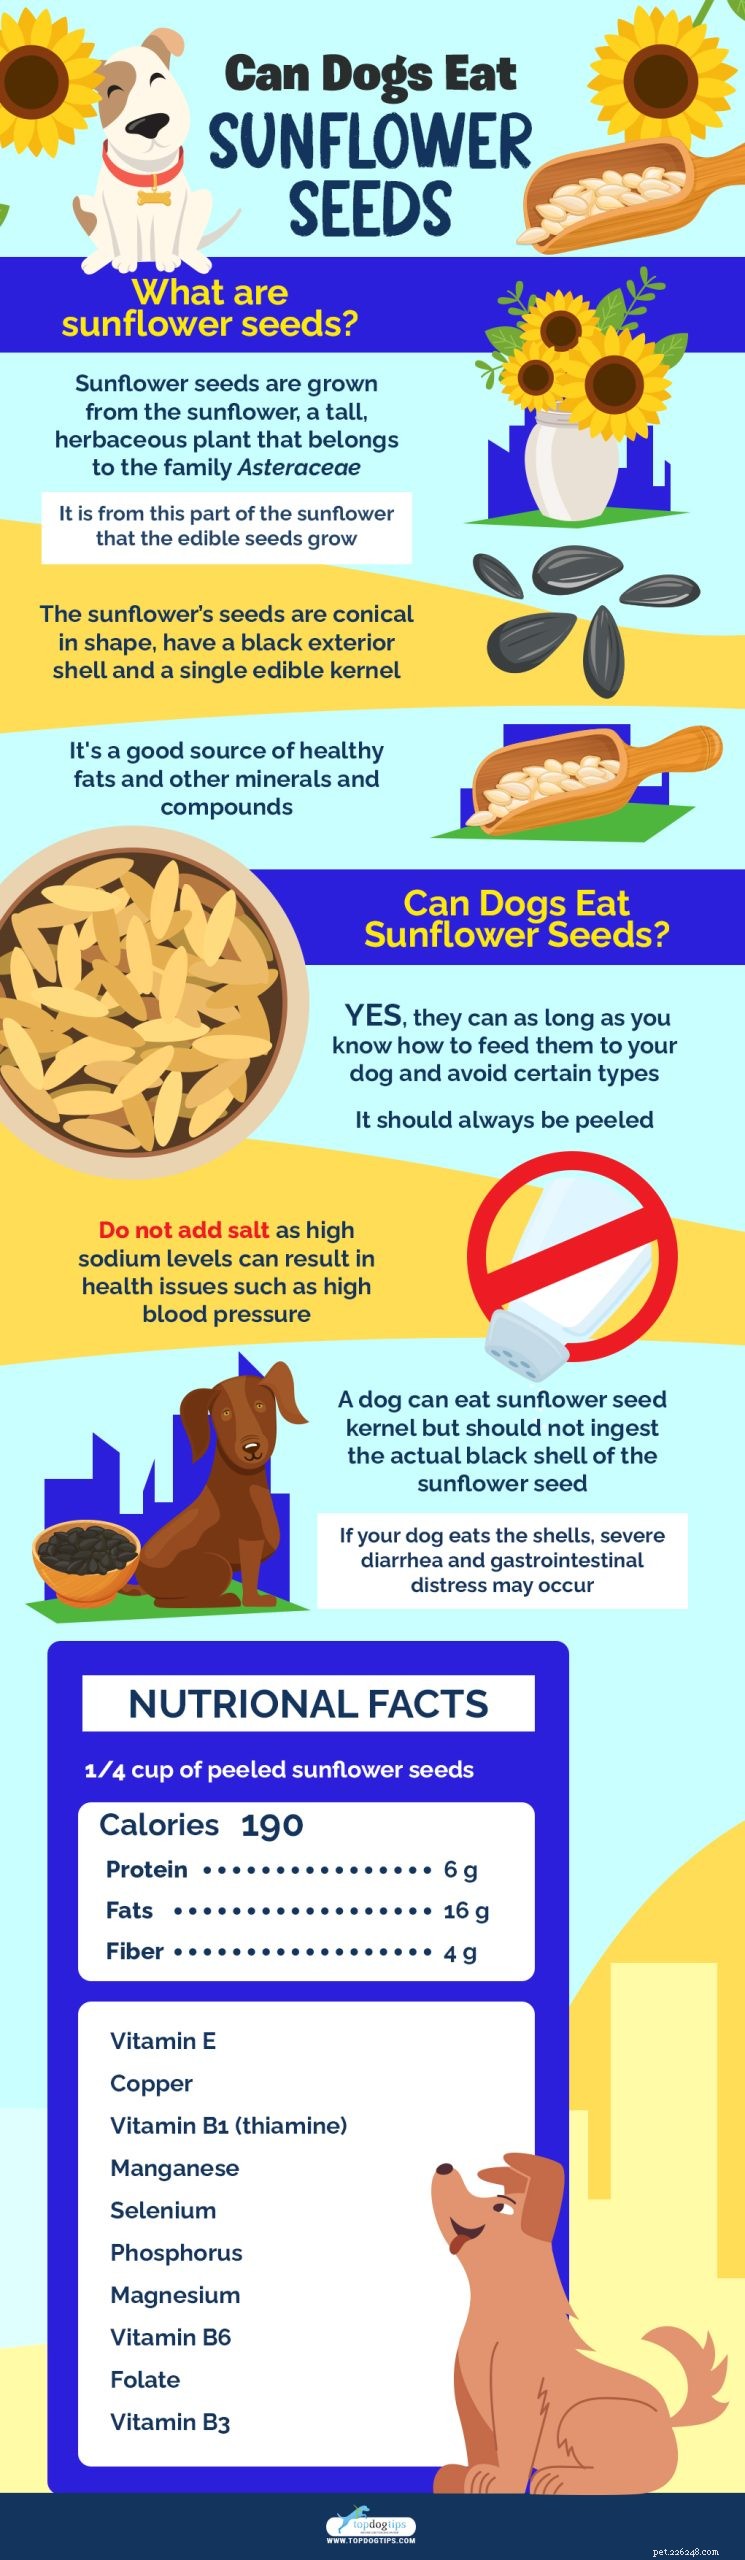 Les chiens peuvent-ils manger des graines de tournesol ? 5 avantages et 3 effets secondaires